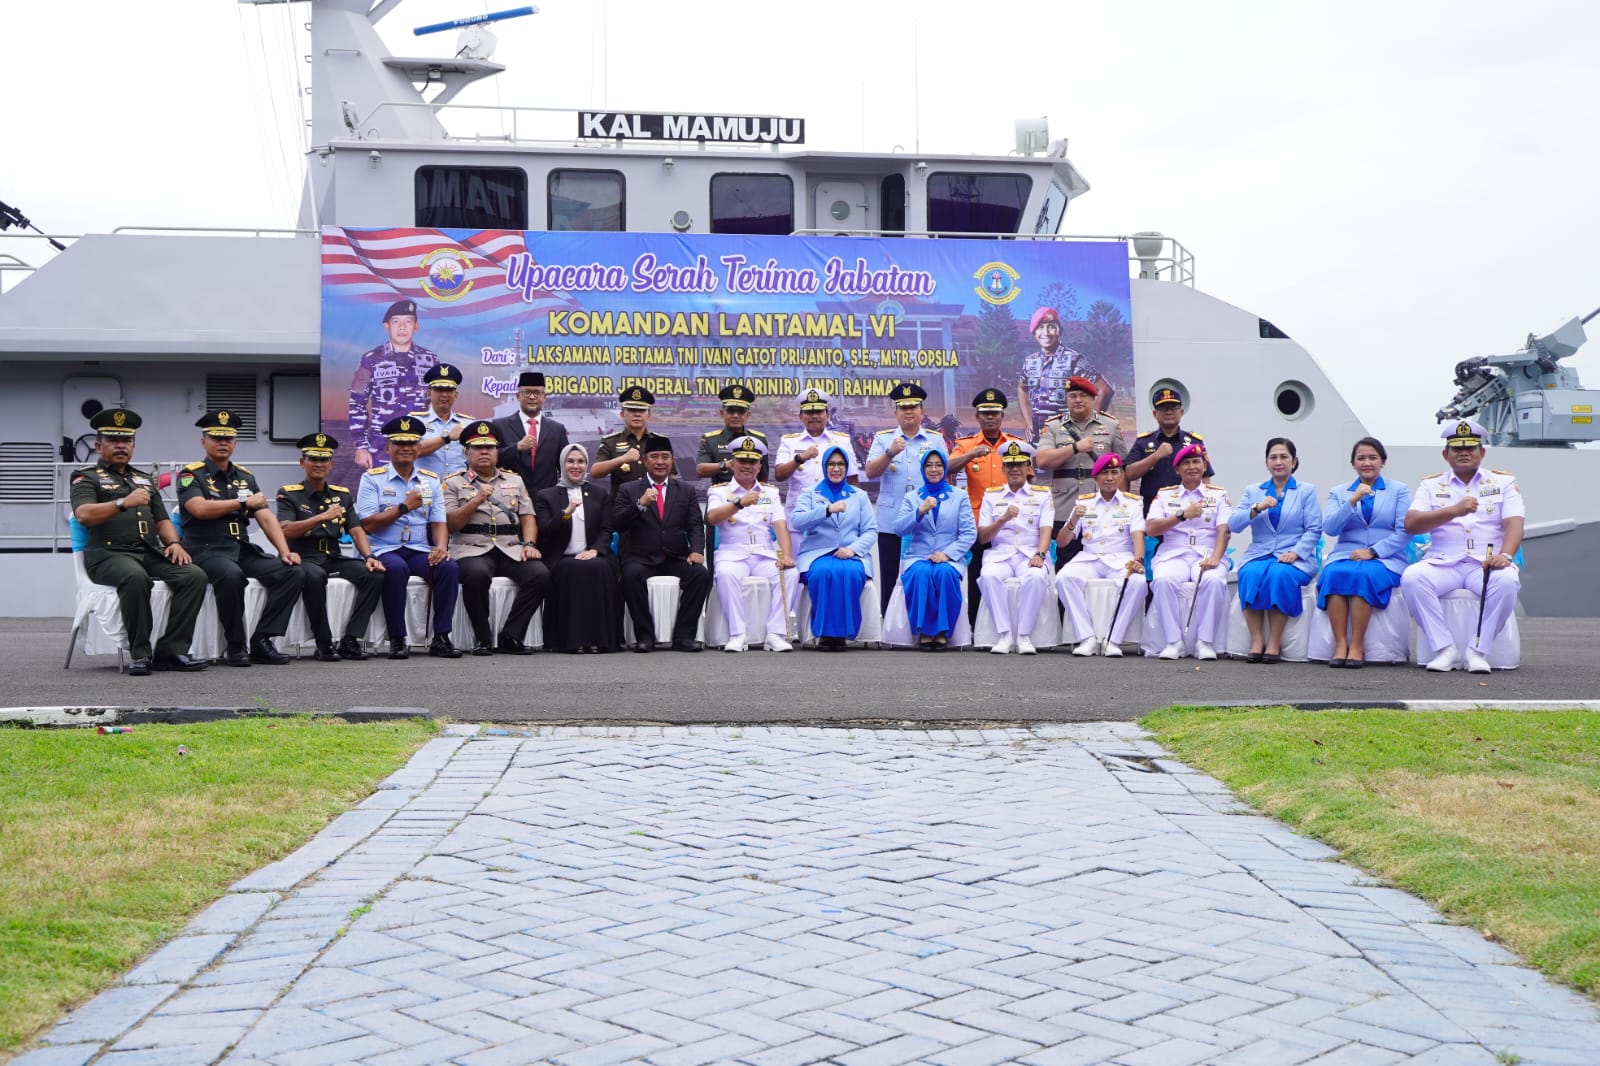 Ketua DPRD Sulsel Hadiri Serah Terima Jabatan Komandan Pangkalan Utama TNI AL VI